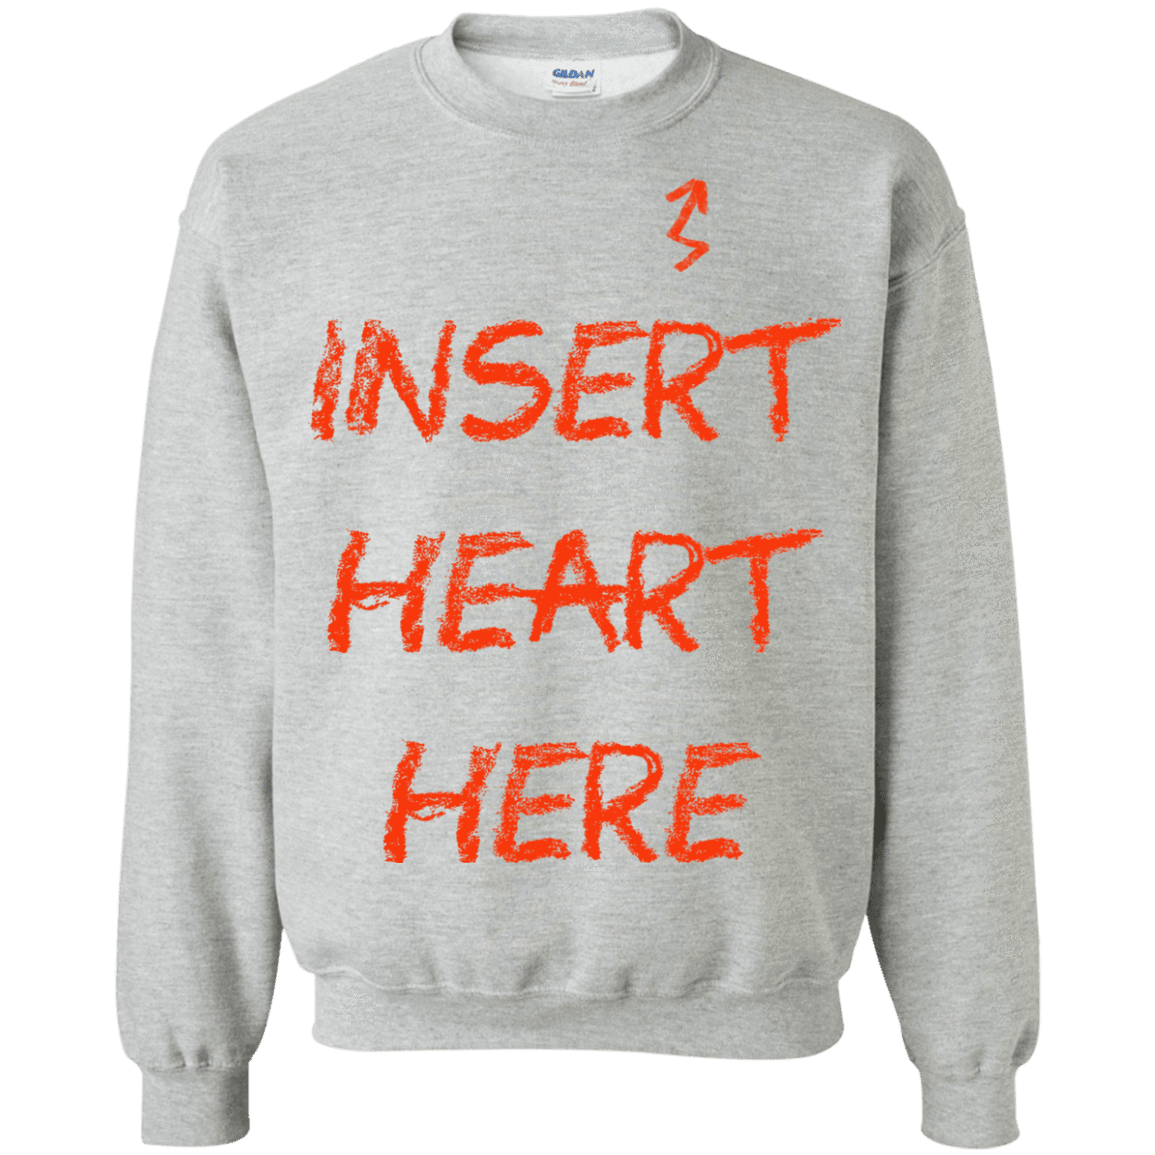 Sweatshirts Sport Grey / S Insert Heart Here Crewneck Sweatshirt